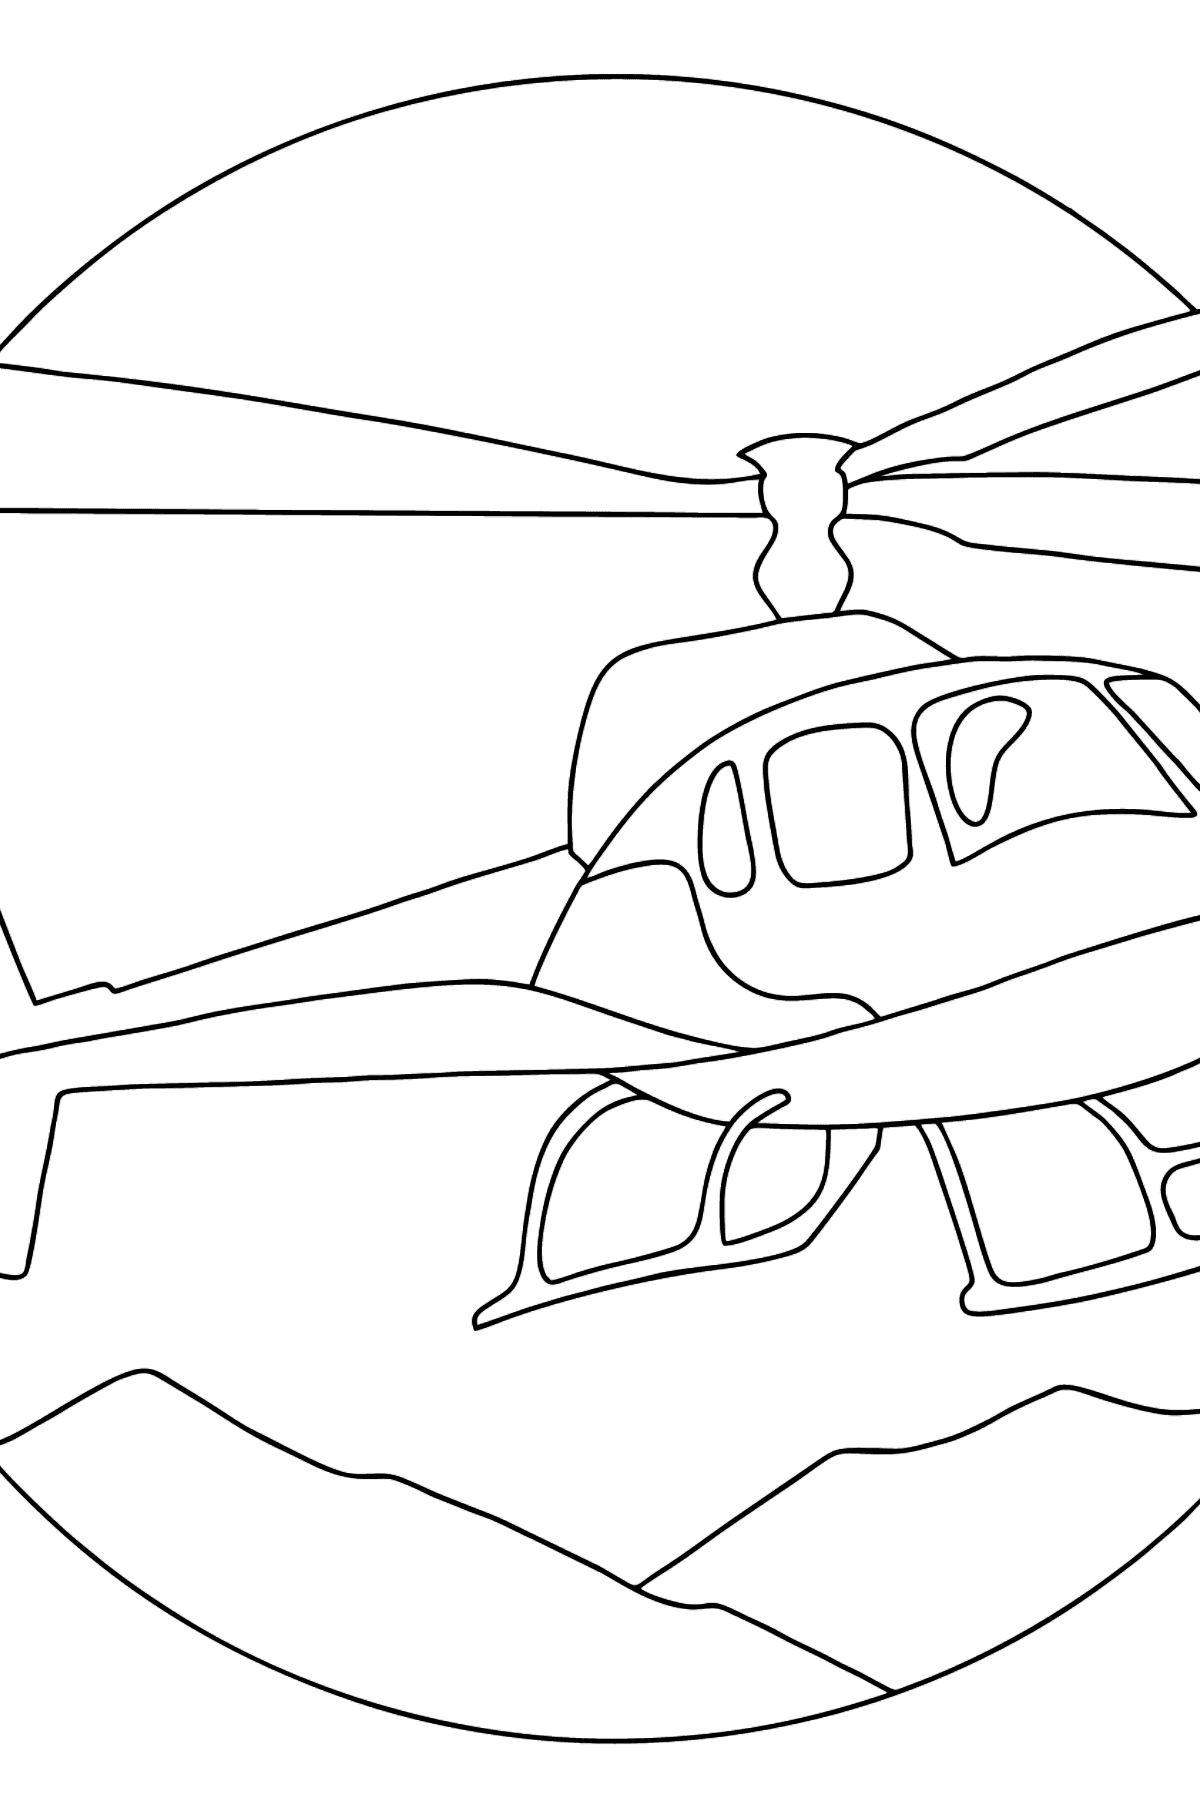 Desenho de helicóptero da cidade para colorir - Imagens para Colorir para Crianças